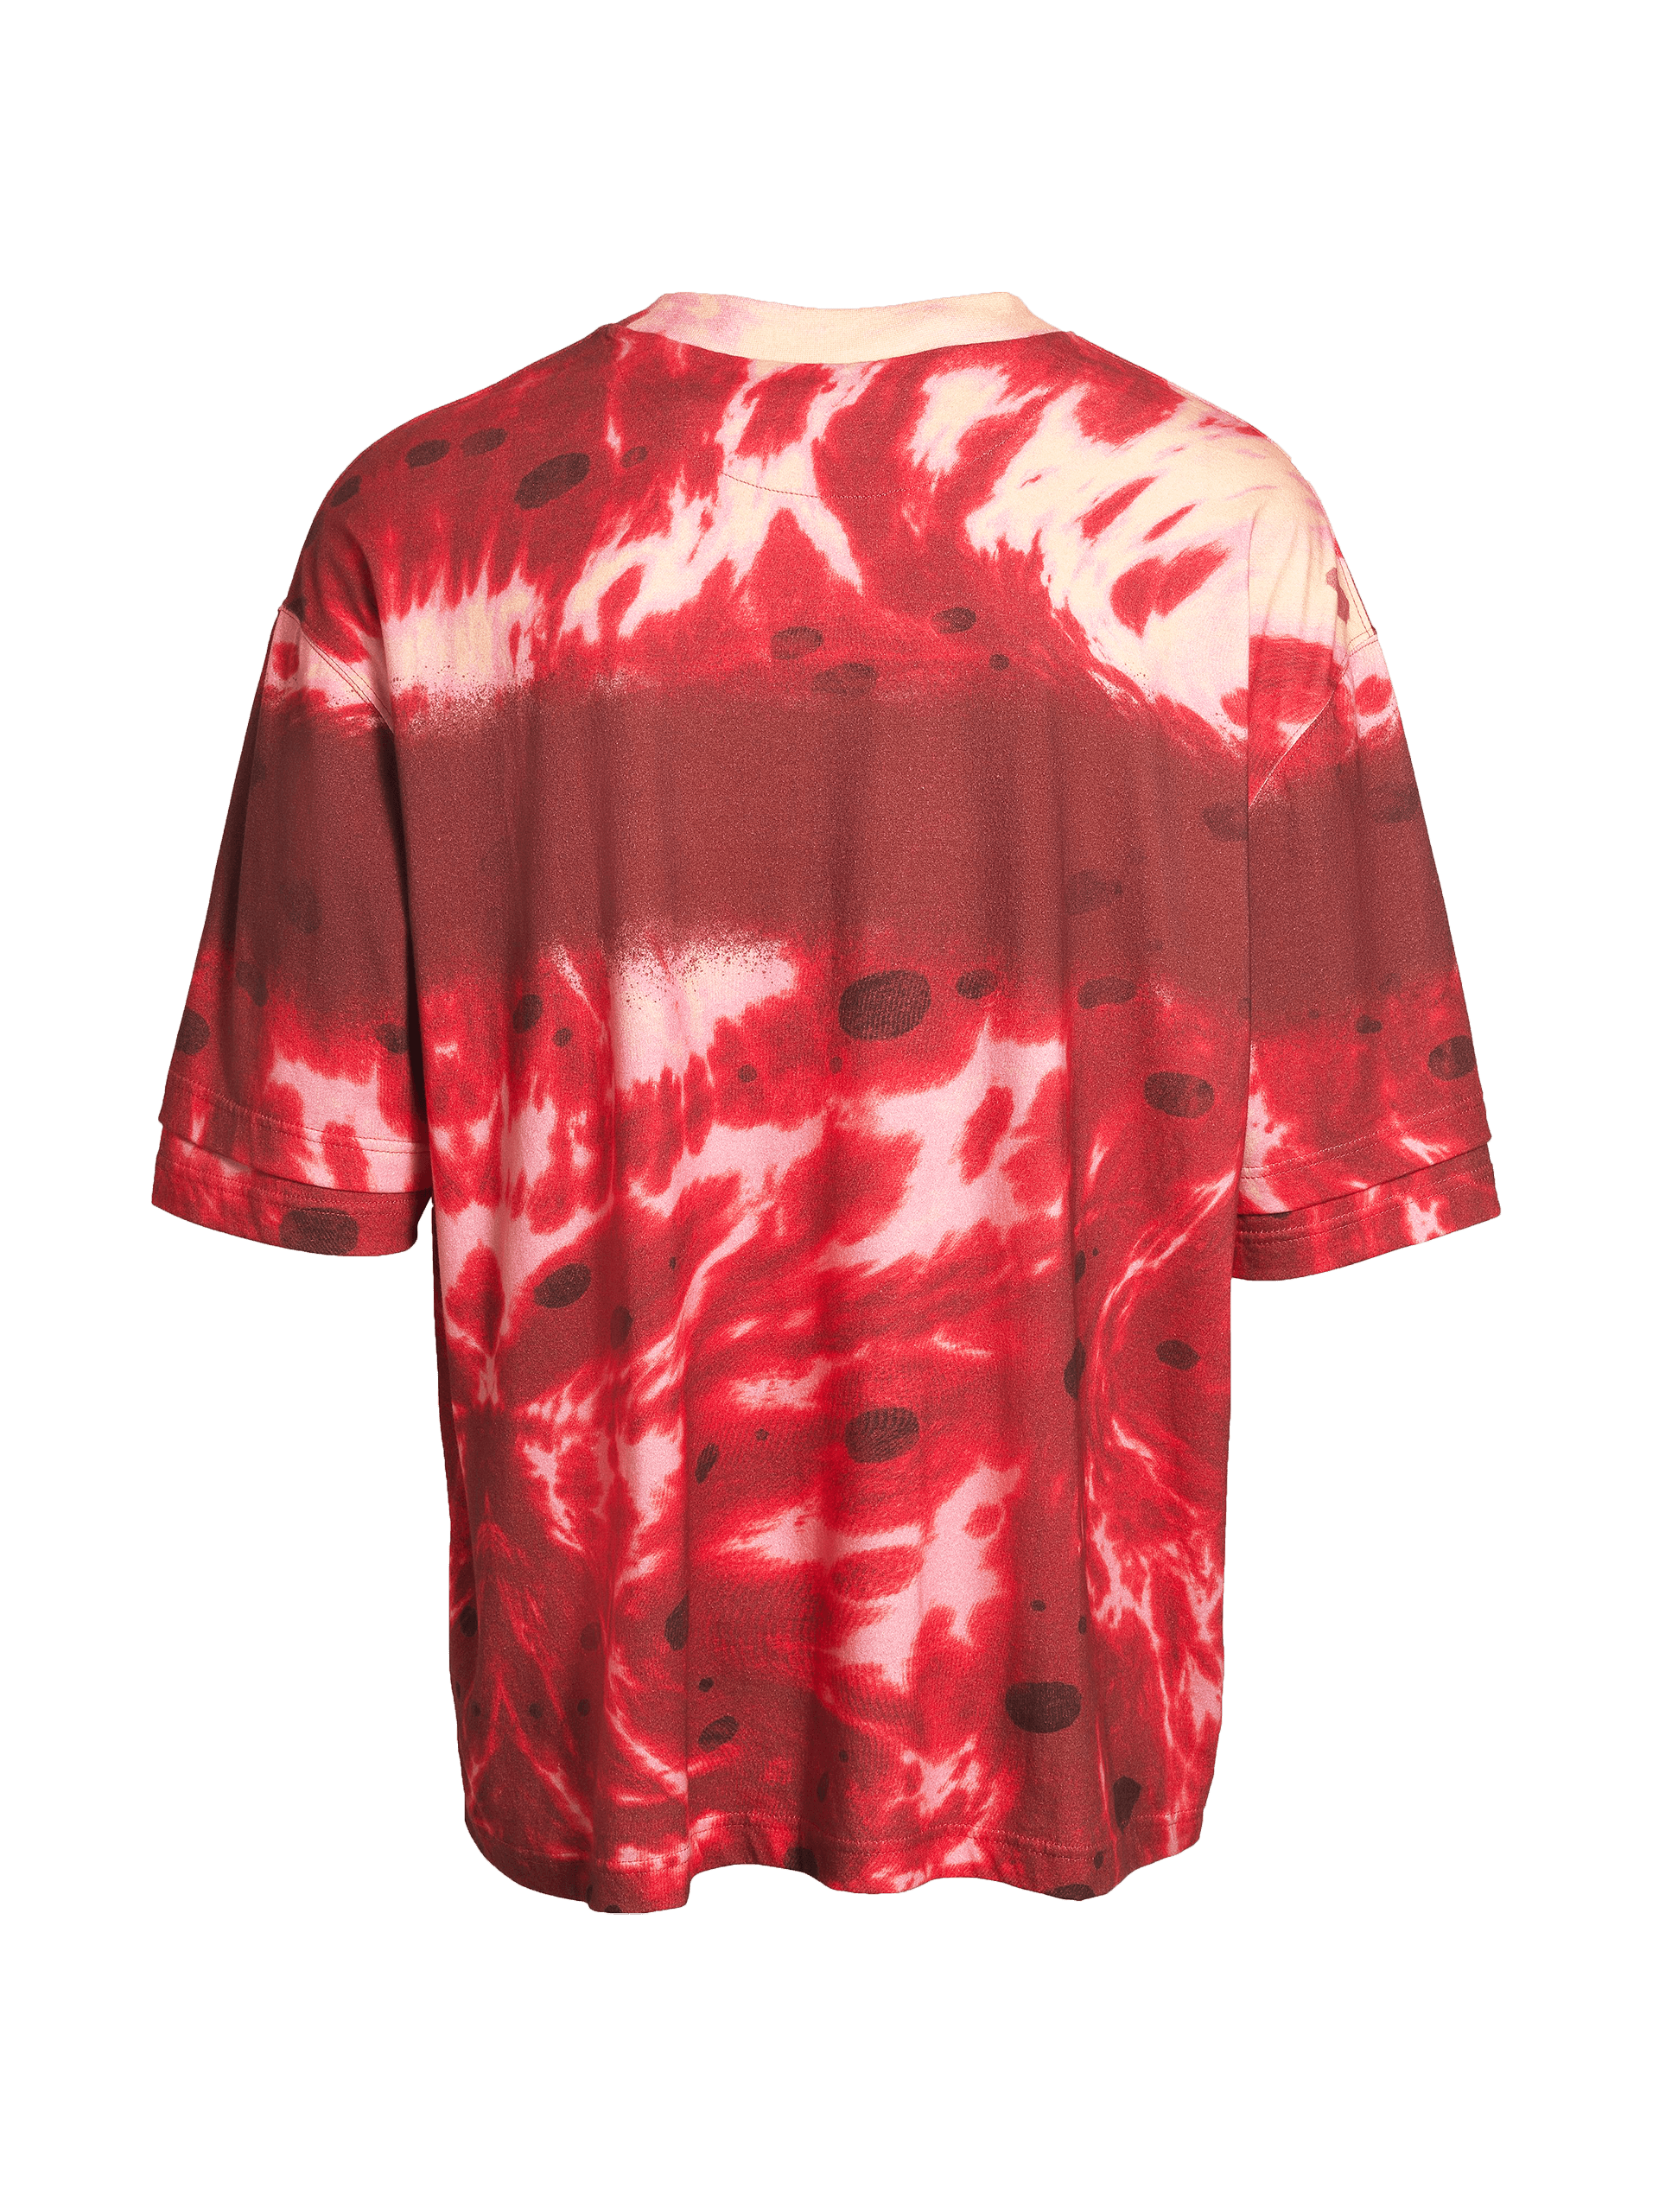 Scarlet Rot T-Shirt